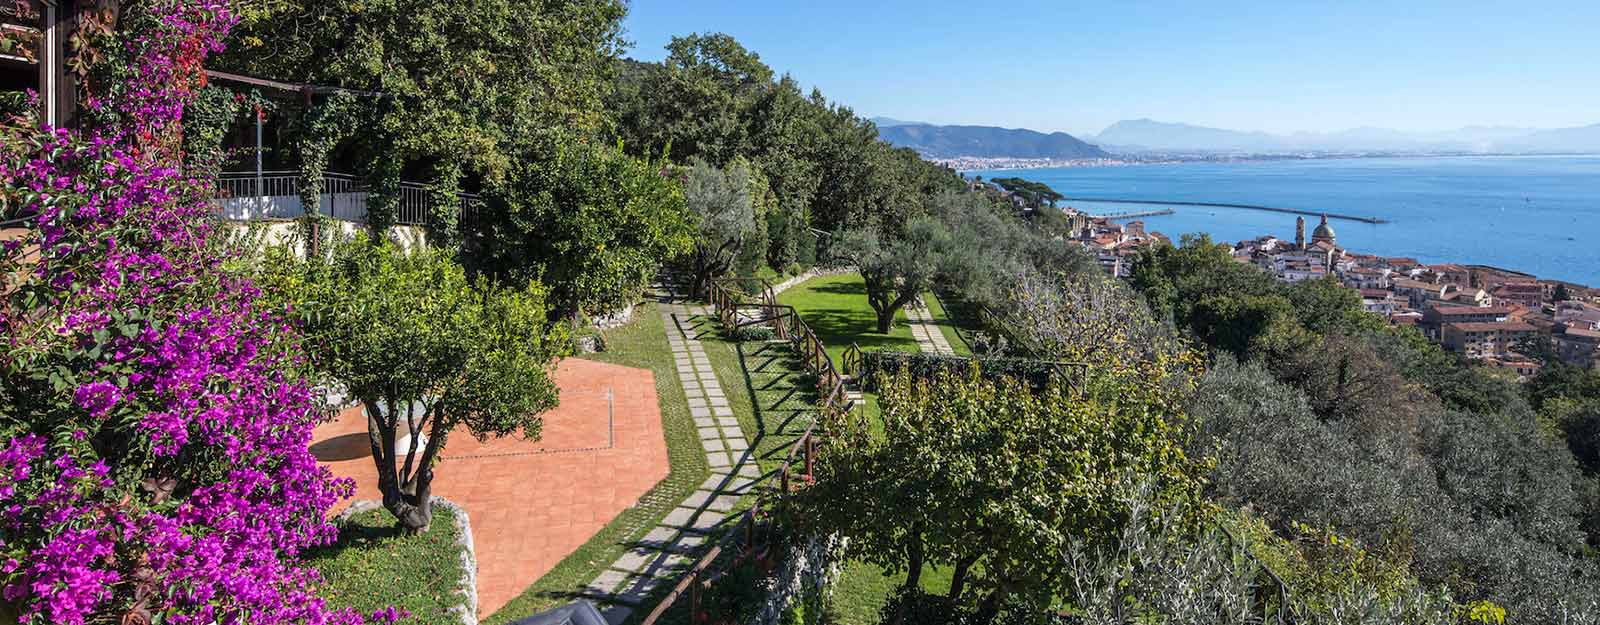 Villa Divina Amalfi coast